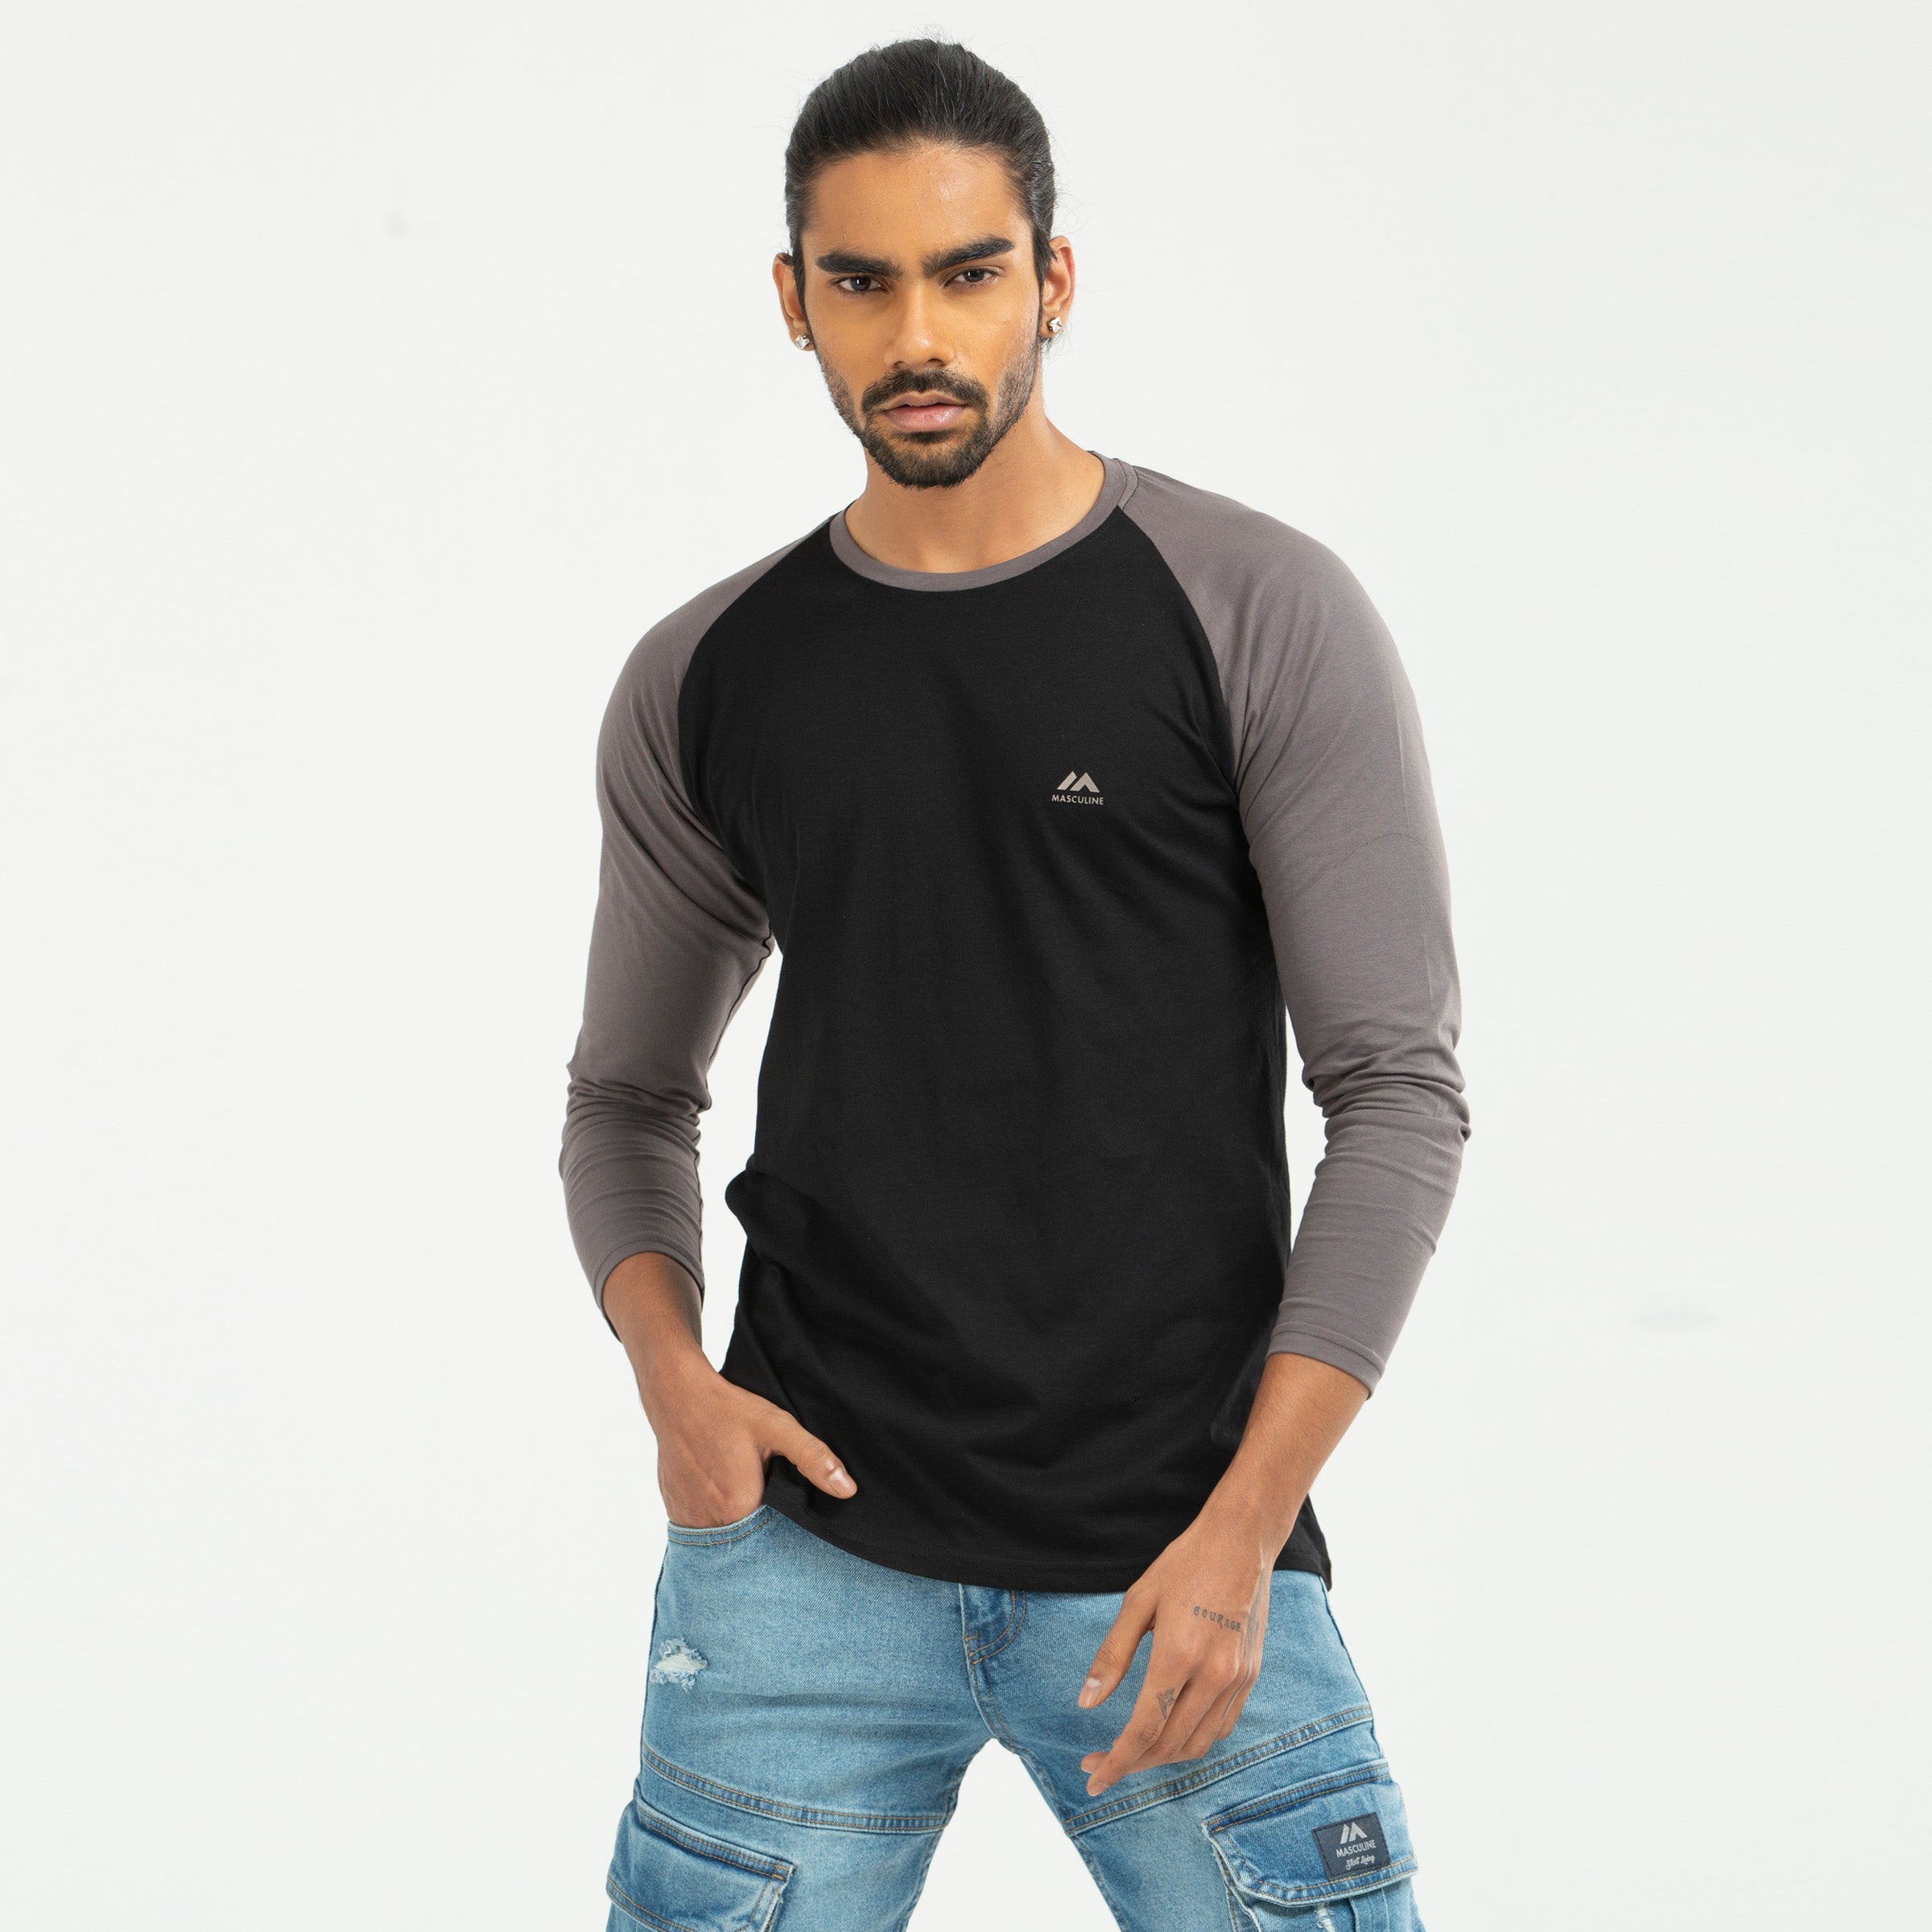 Raglan Long Sleeve T-shirt - charcoal & black